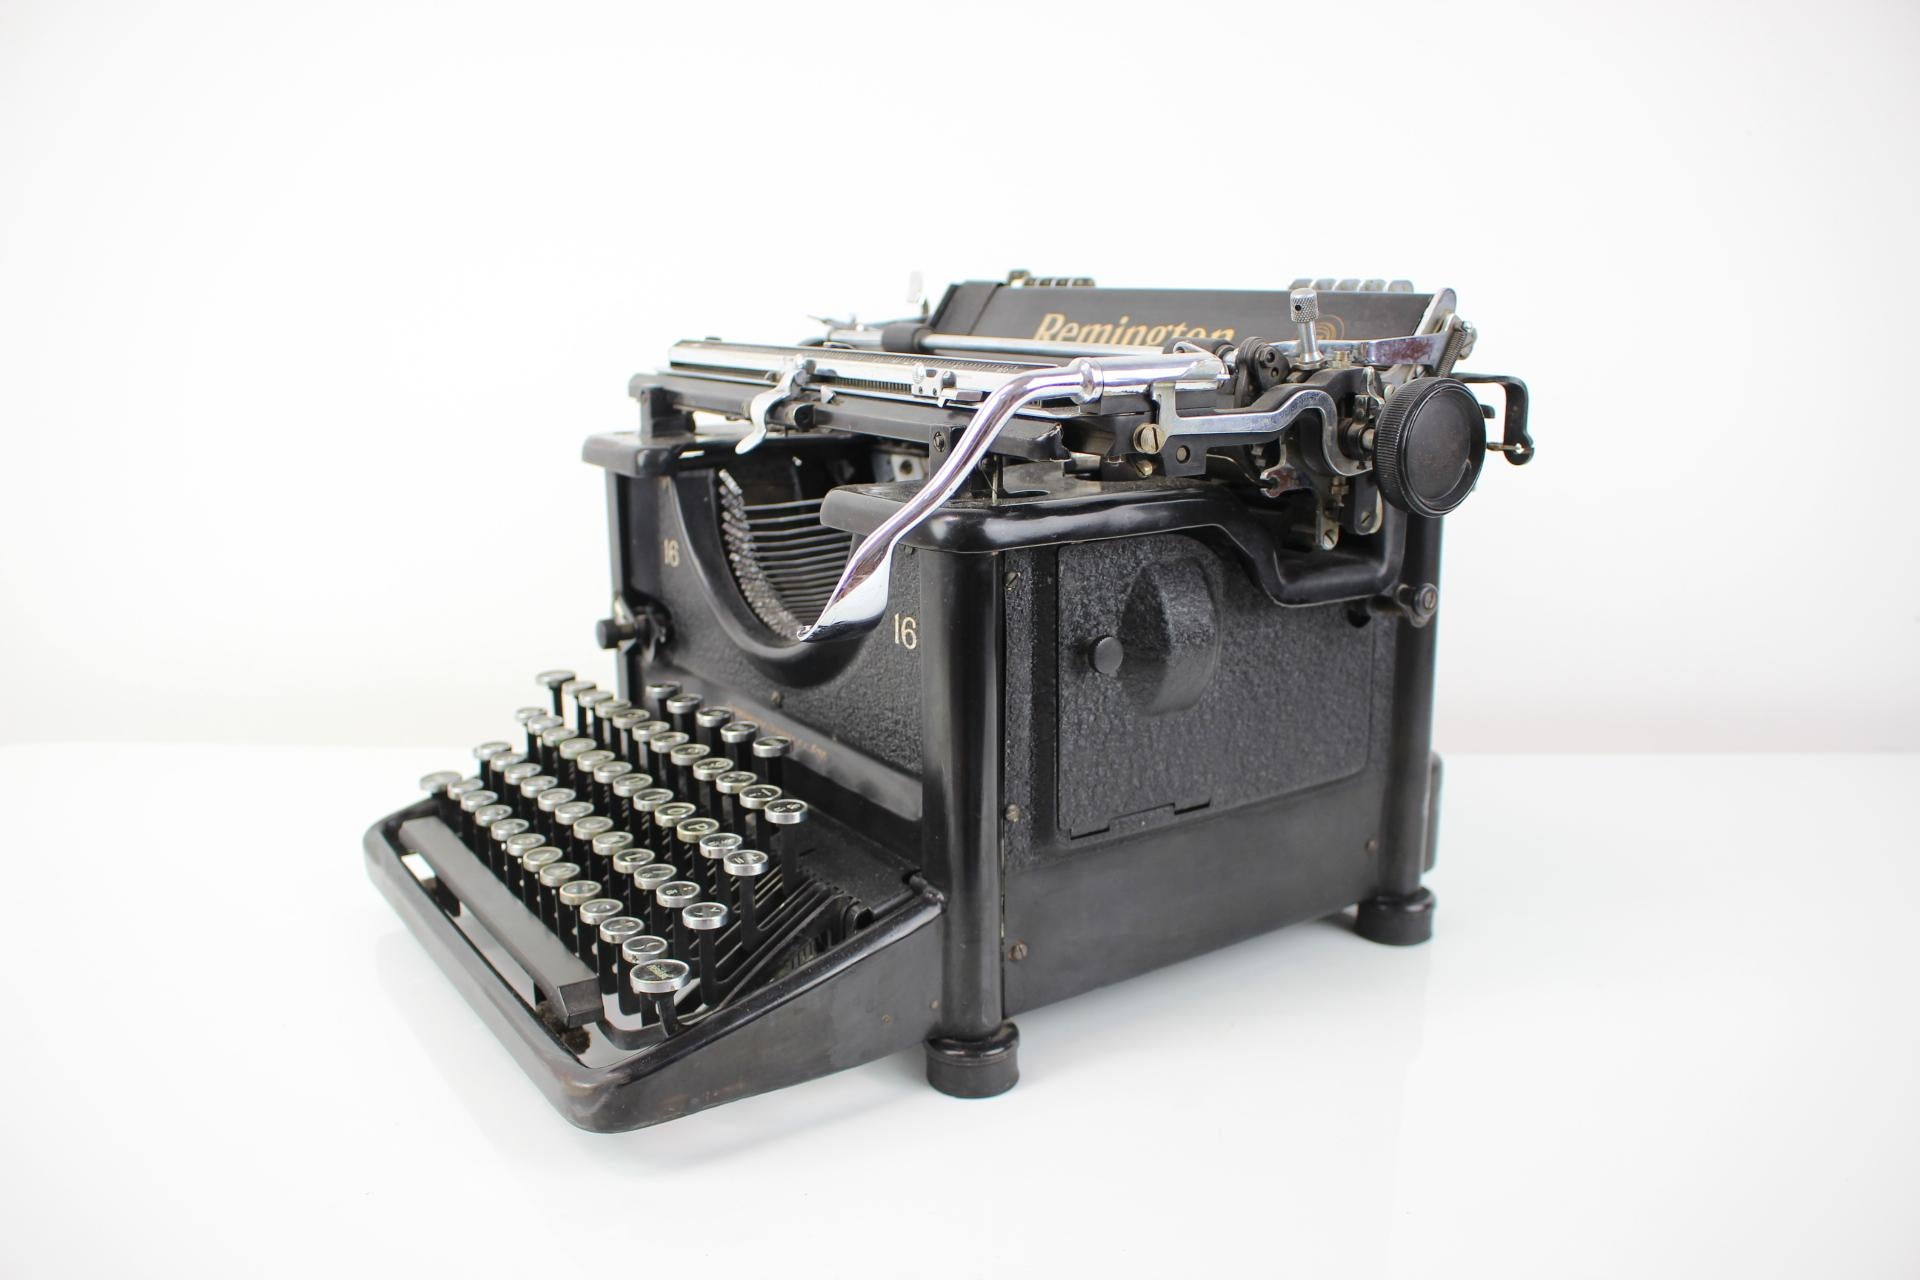 old remington typewriter